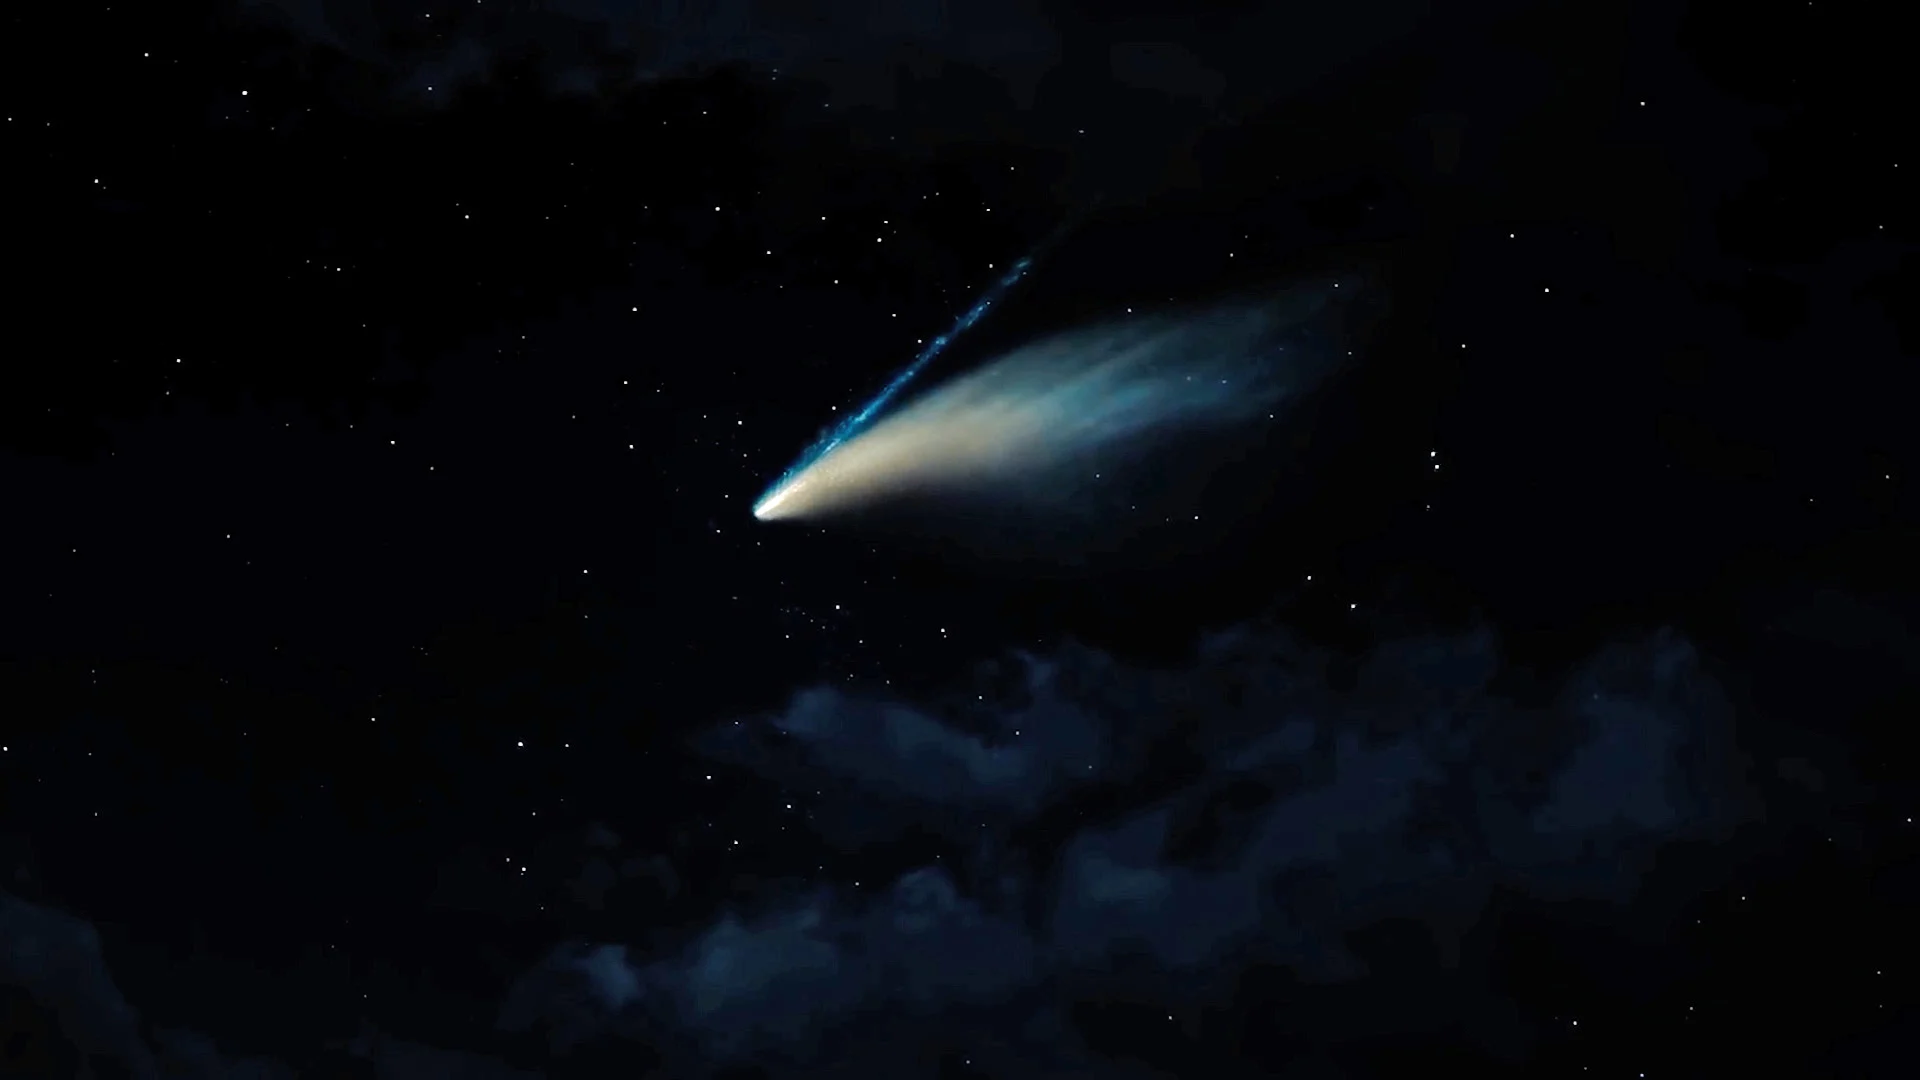 Don't Look Up-comet